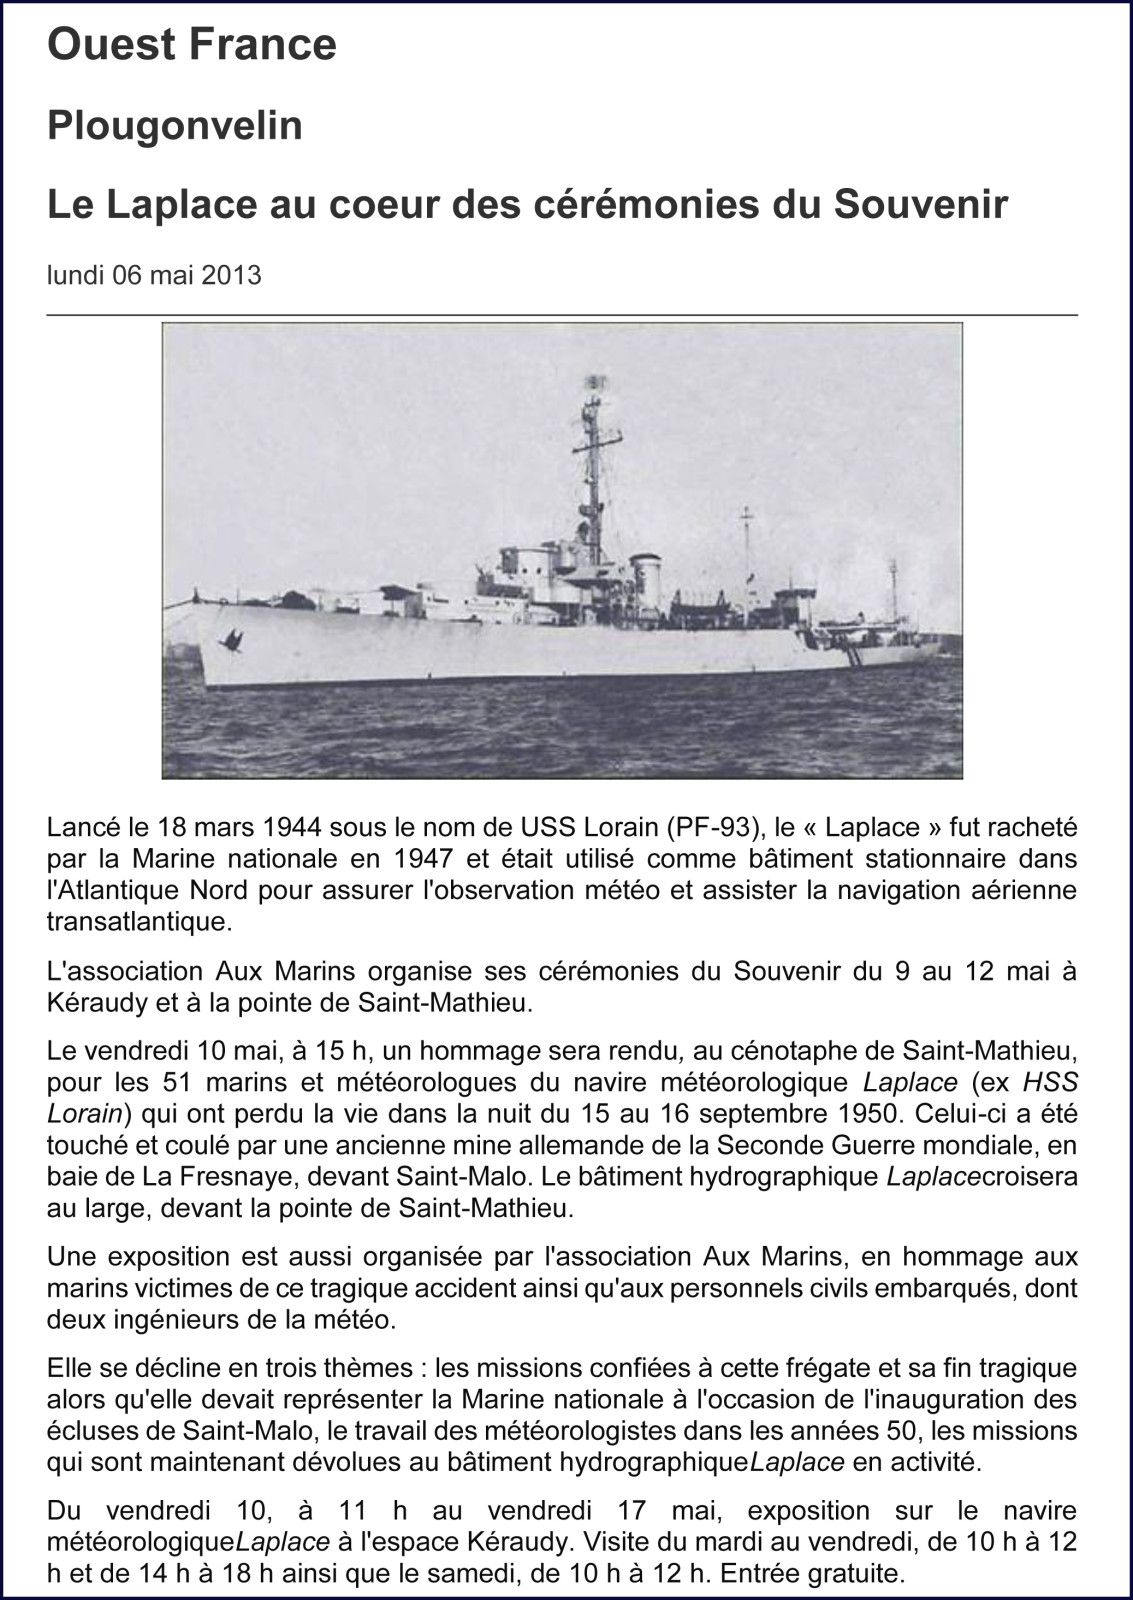 Les articles de presse relatant l'actualité de l'association Aux Marins en 2013